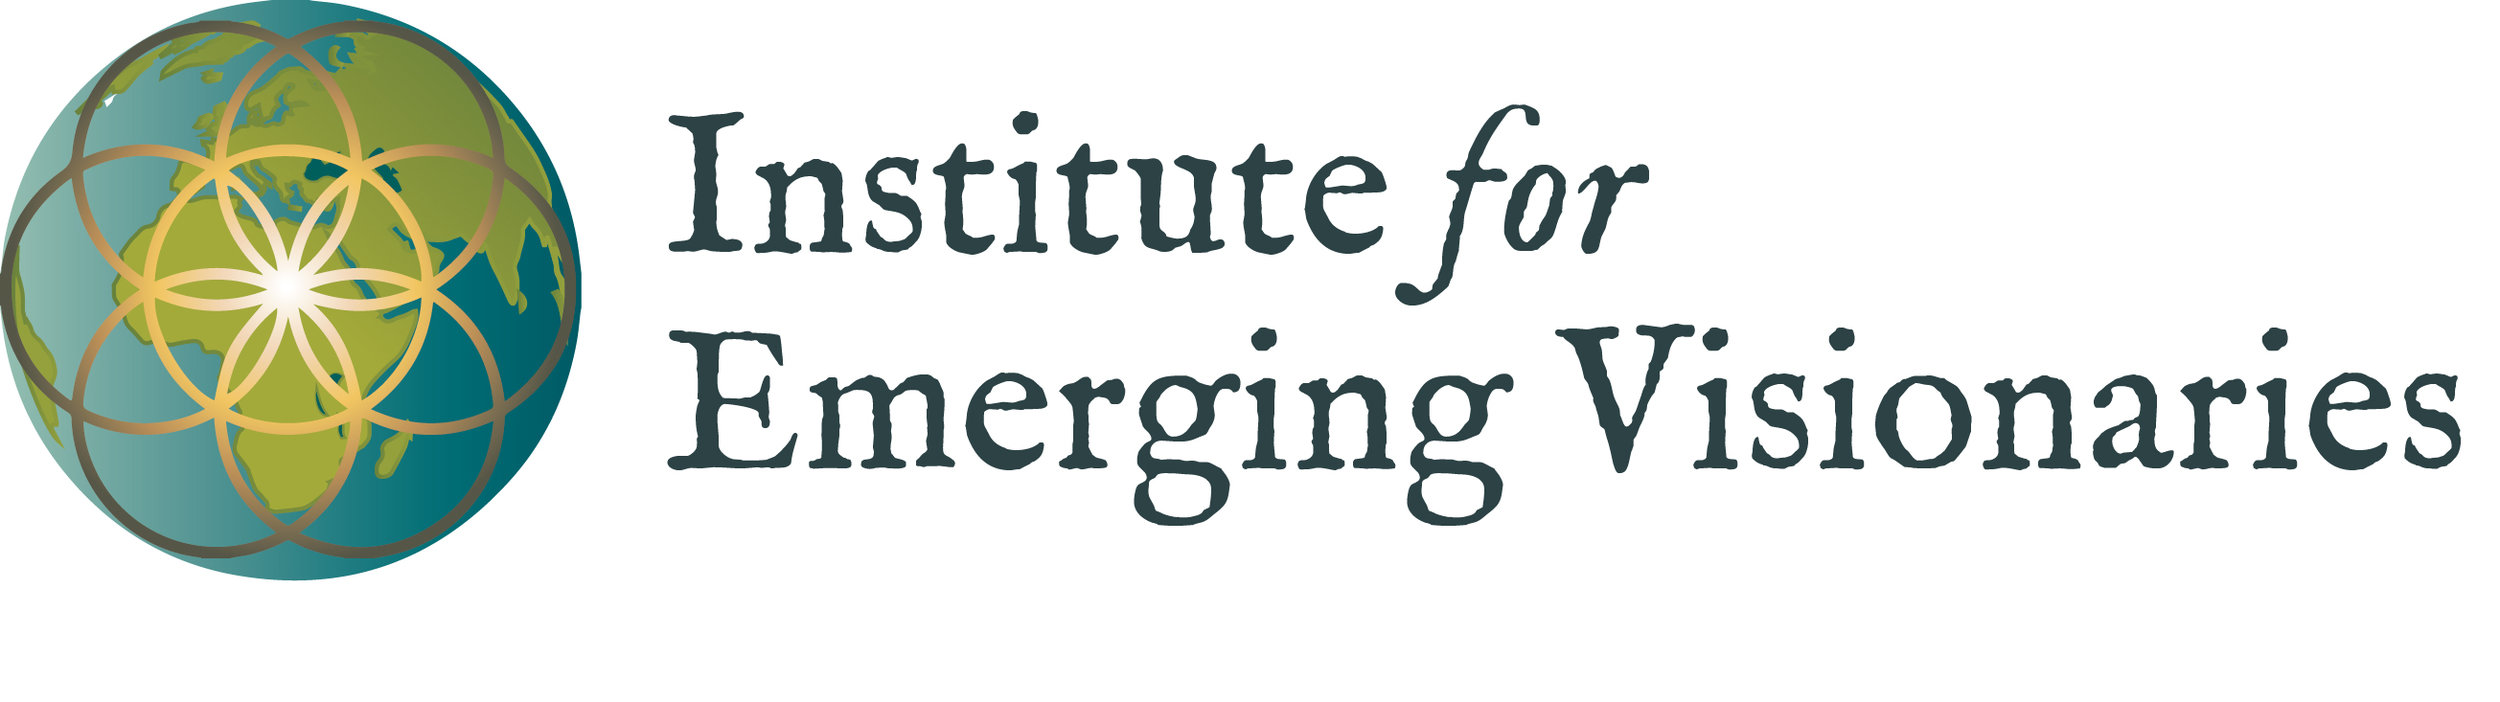 Institute for Emerging Visionaries